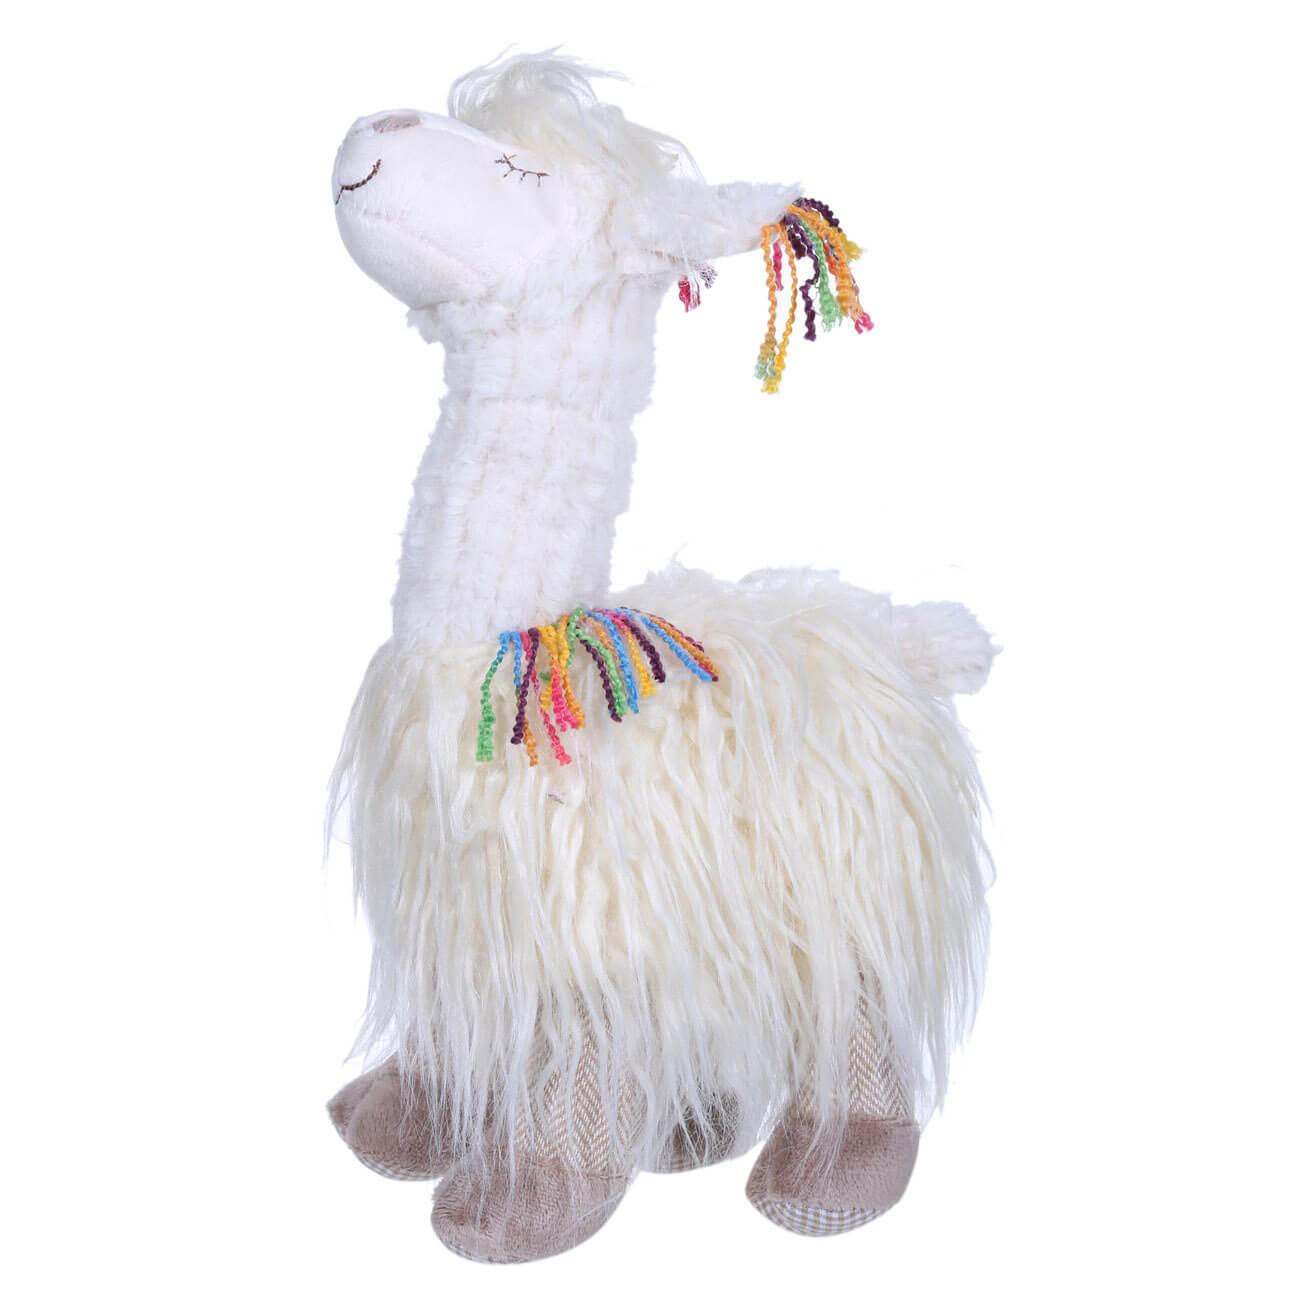 Игрушка декоративная, 34 см, полиэстер, мягкая, Лама, Lama мягкая игрушка ёжик колюнчик в свитере